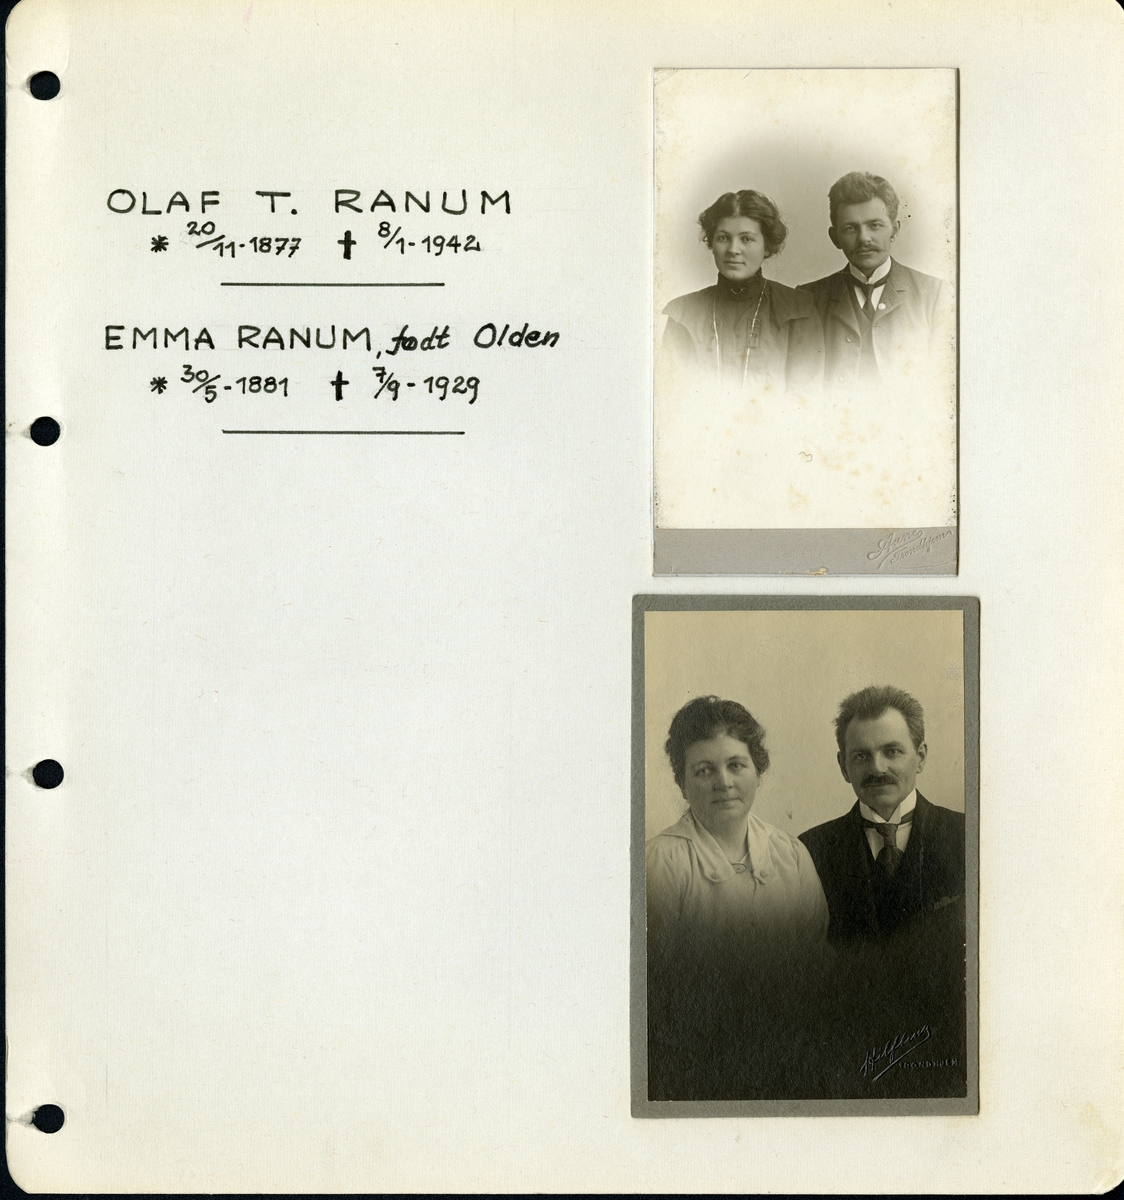 Fra familiealbum. Bilde av Olaf T. Ranum senior og kone Emma Ranum, født Olden.